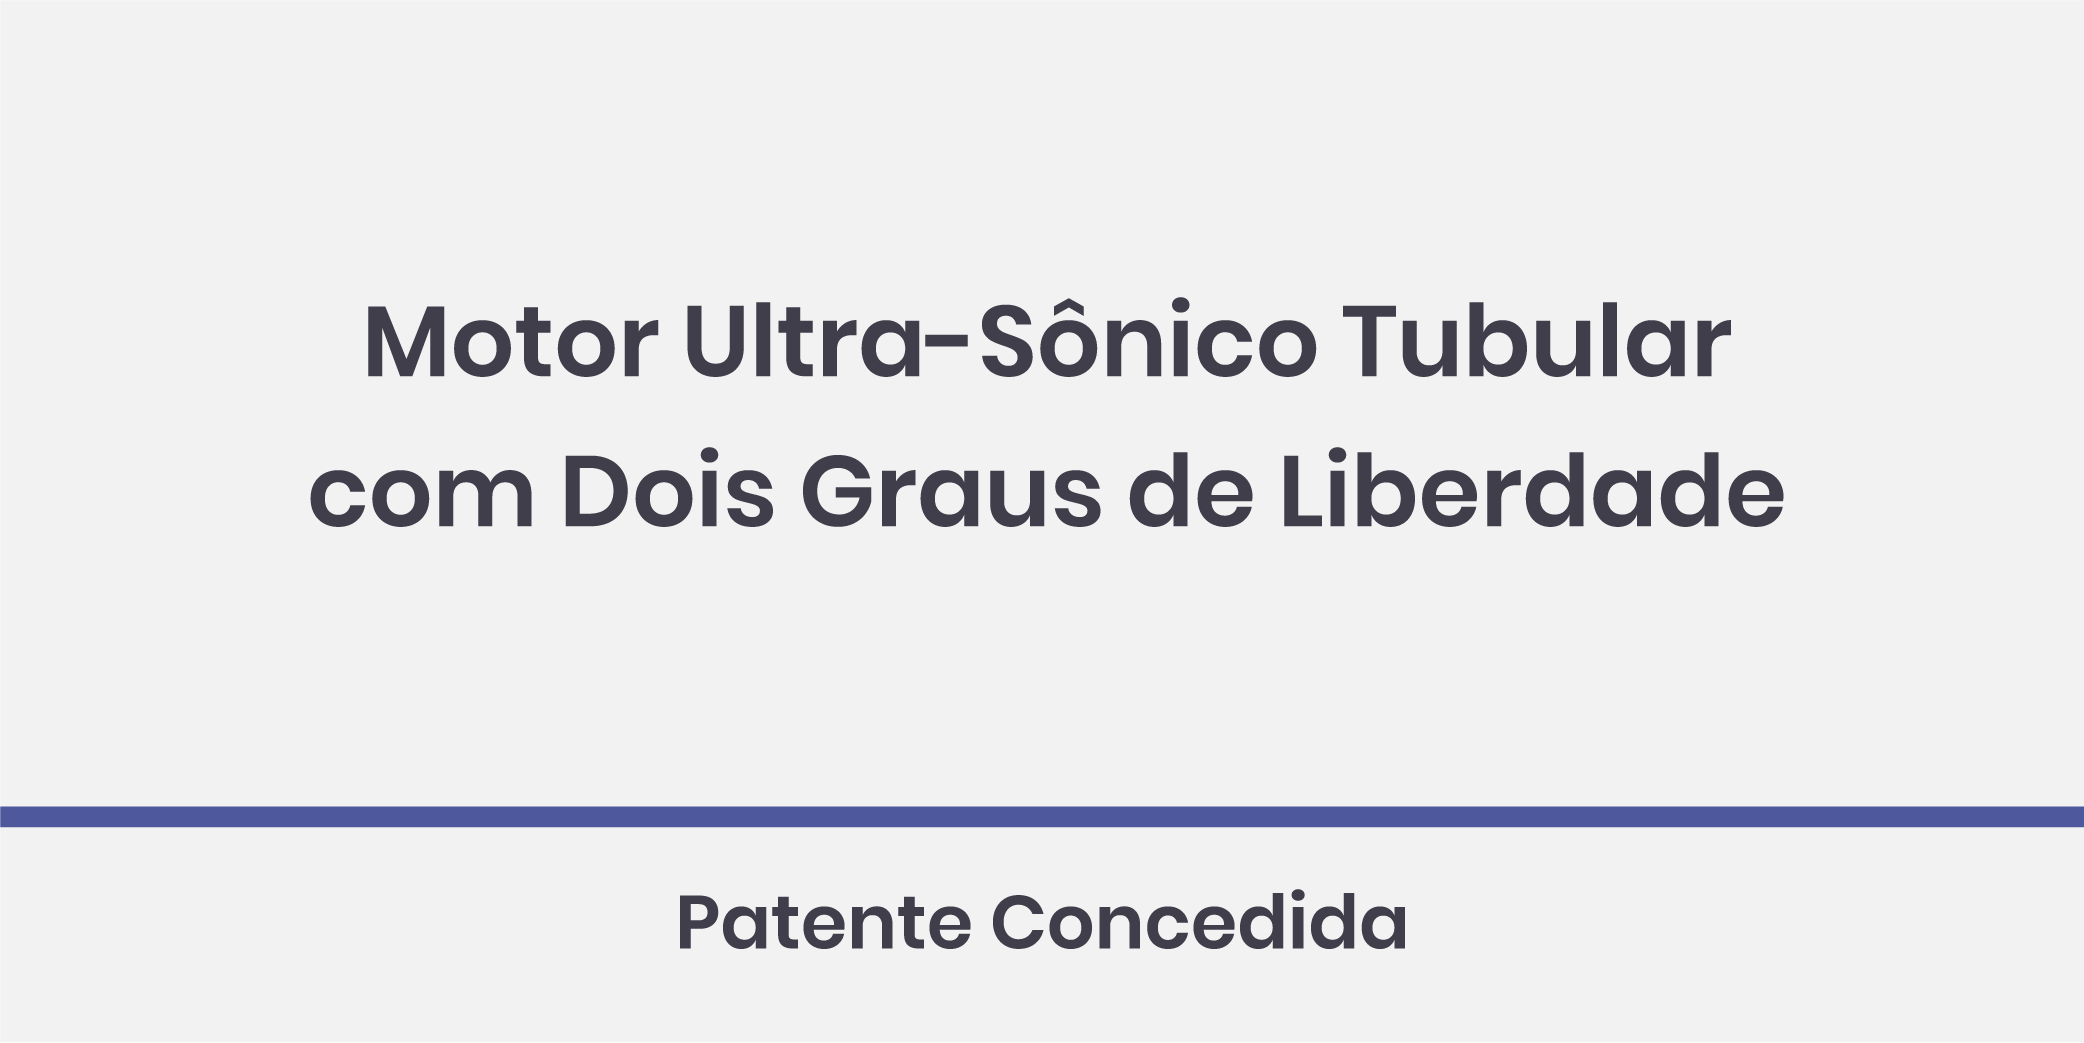 Motor Ultra-Sônico Tubular com Dois Graus de Liberdade; Patente Concedida.